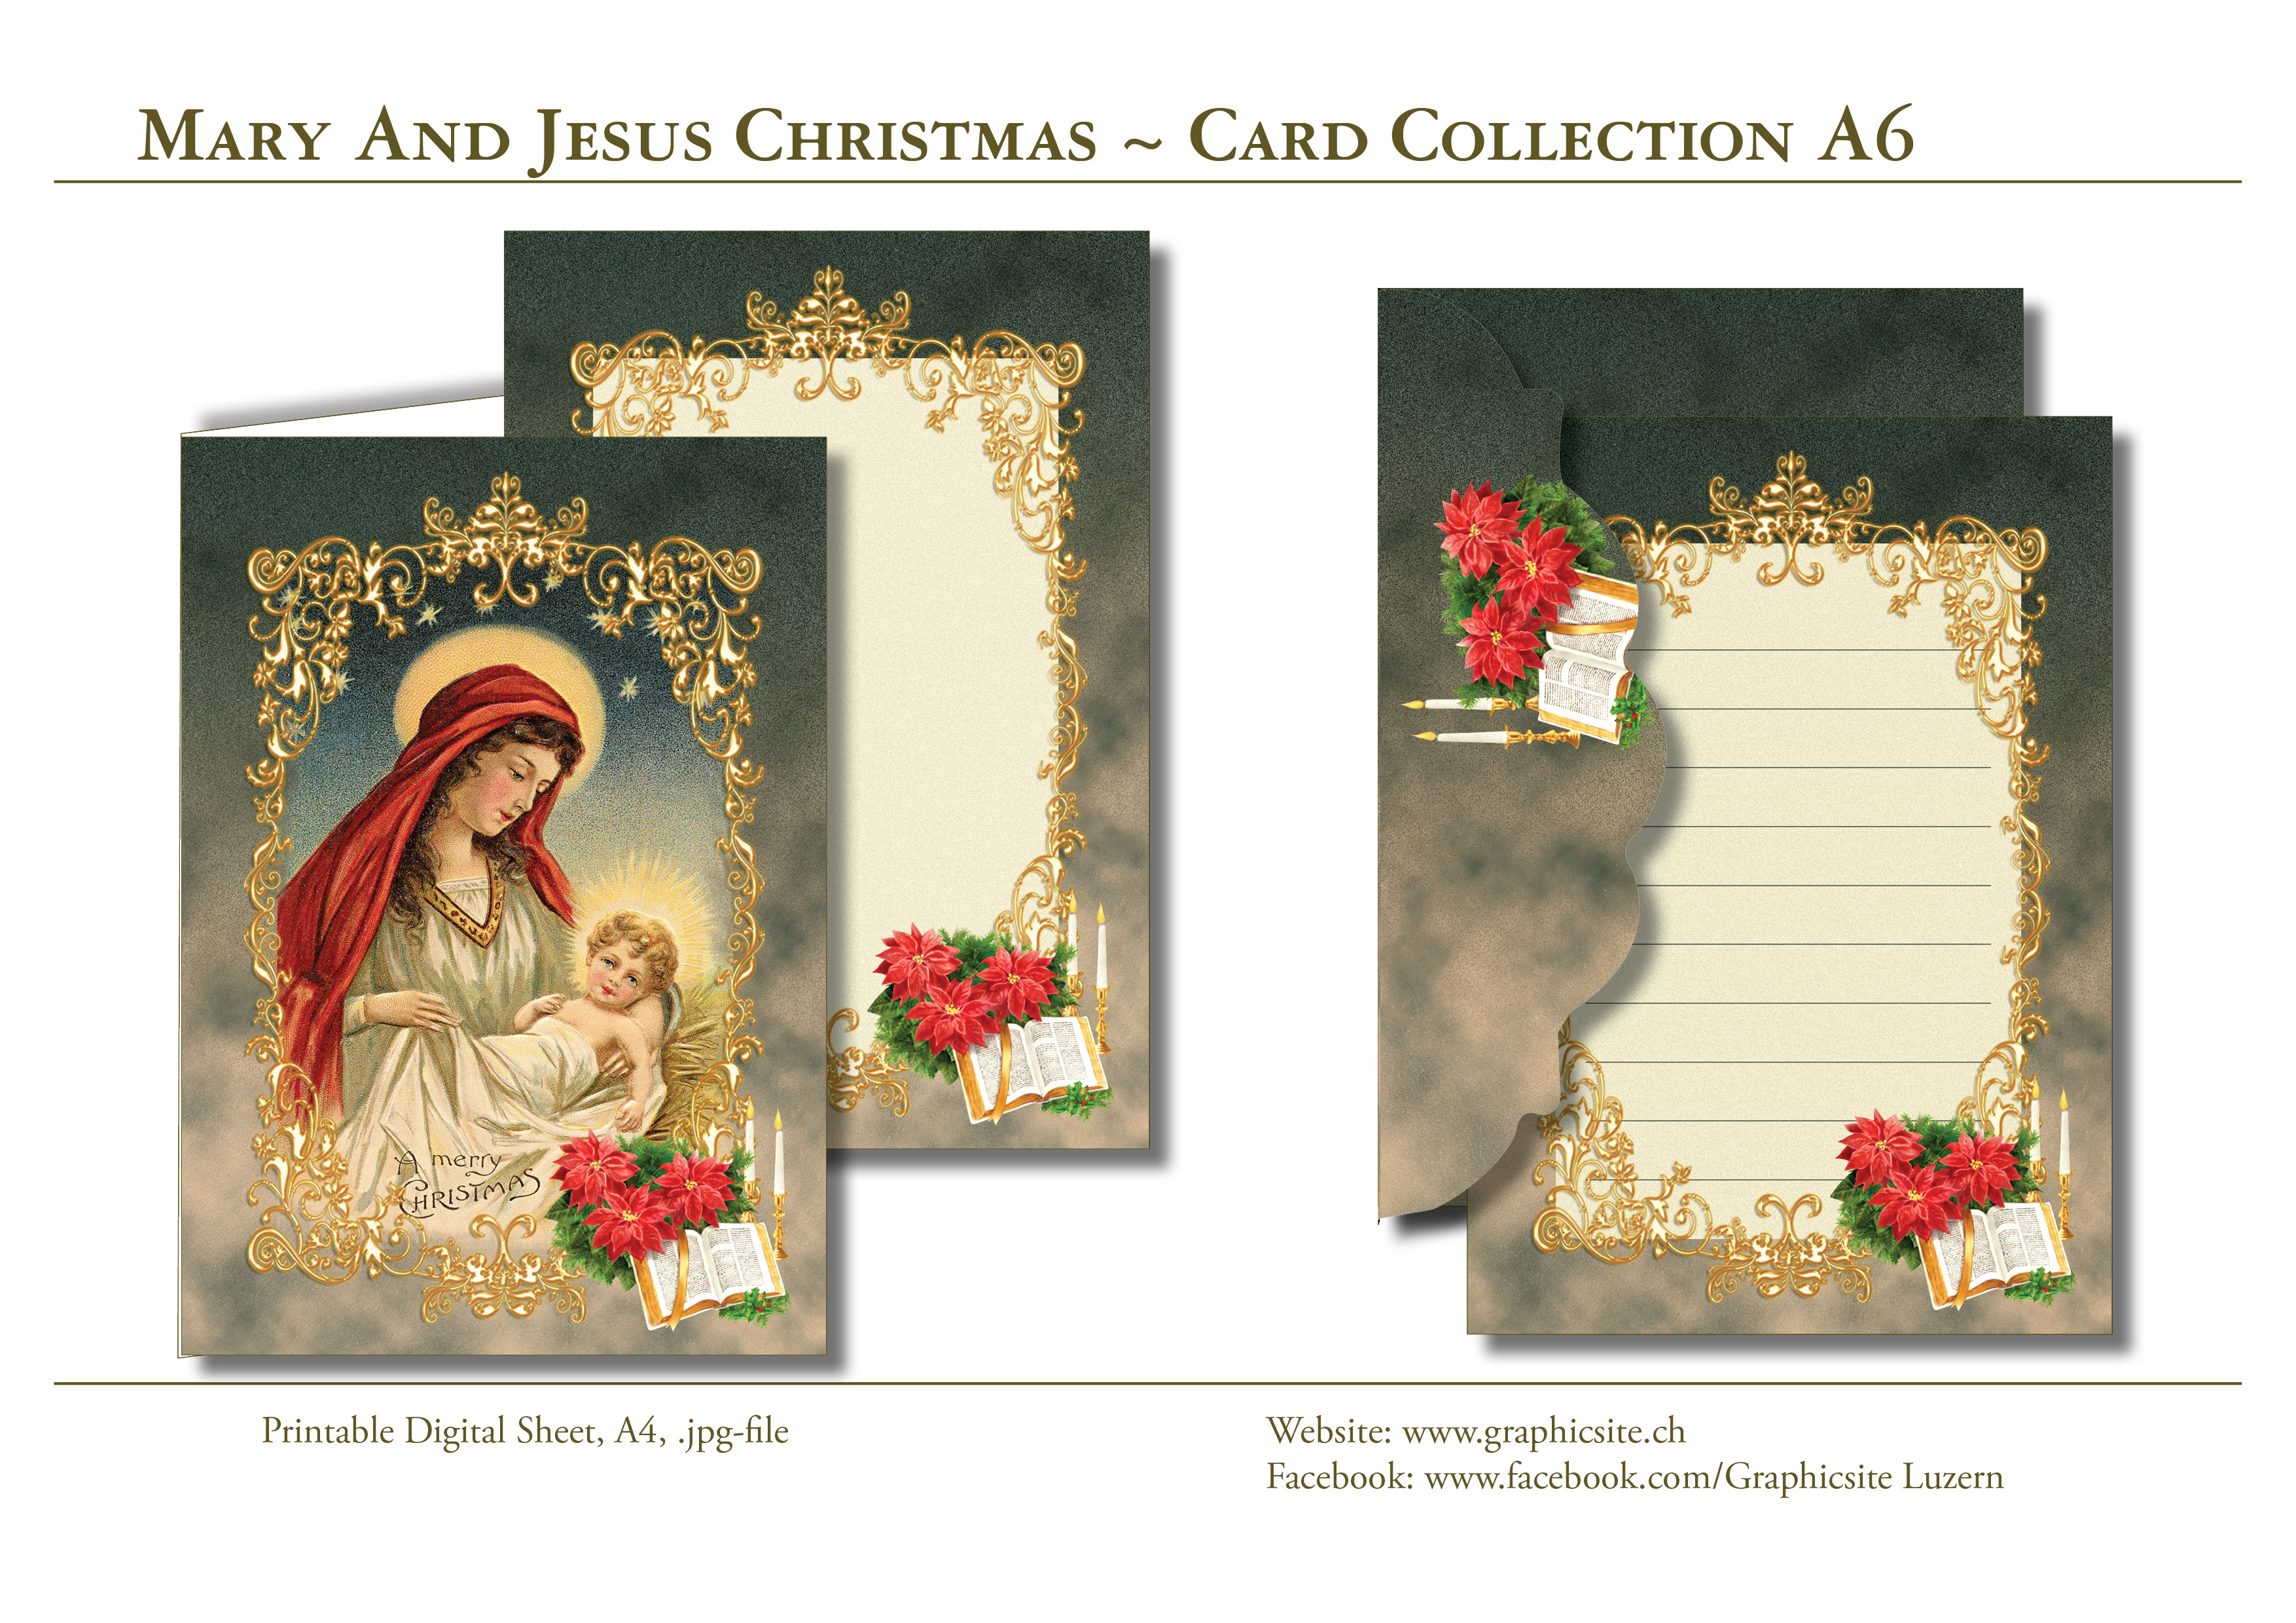 Grusskarten, Weihnachtskarten, selber drucken, Maria, Jesus, Christlich, basteln, 